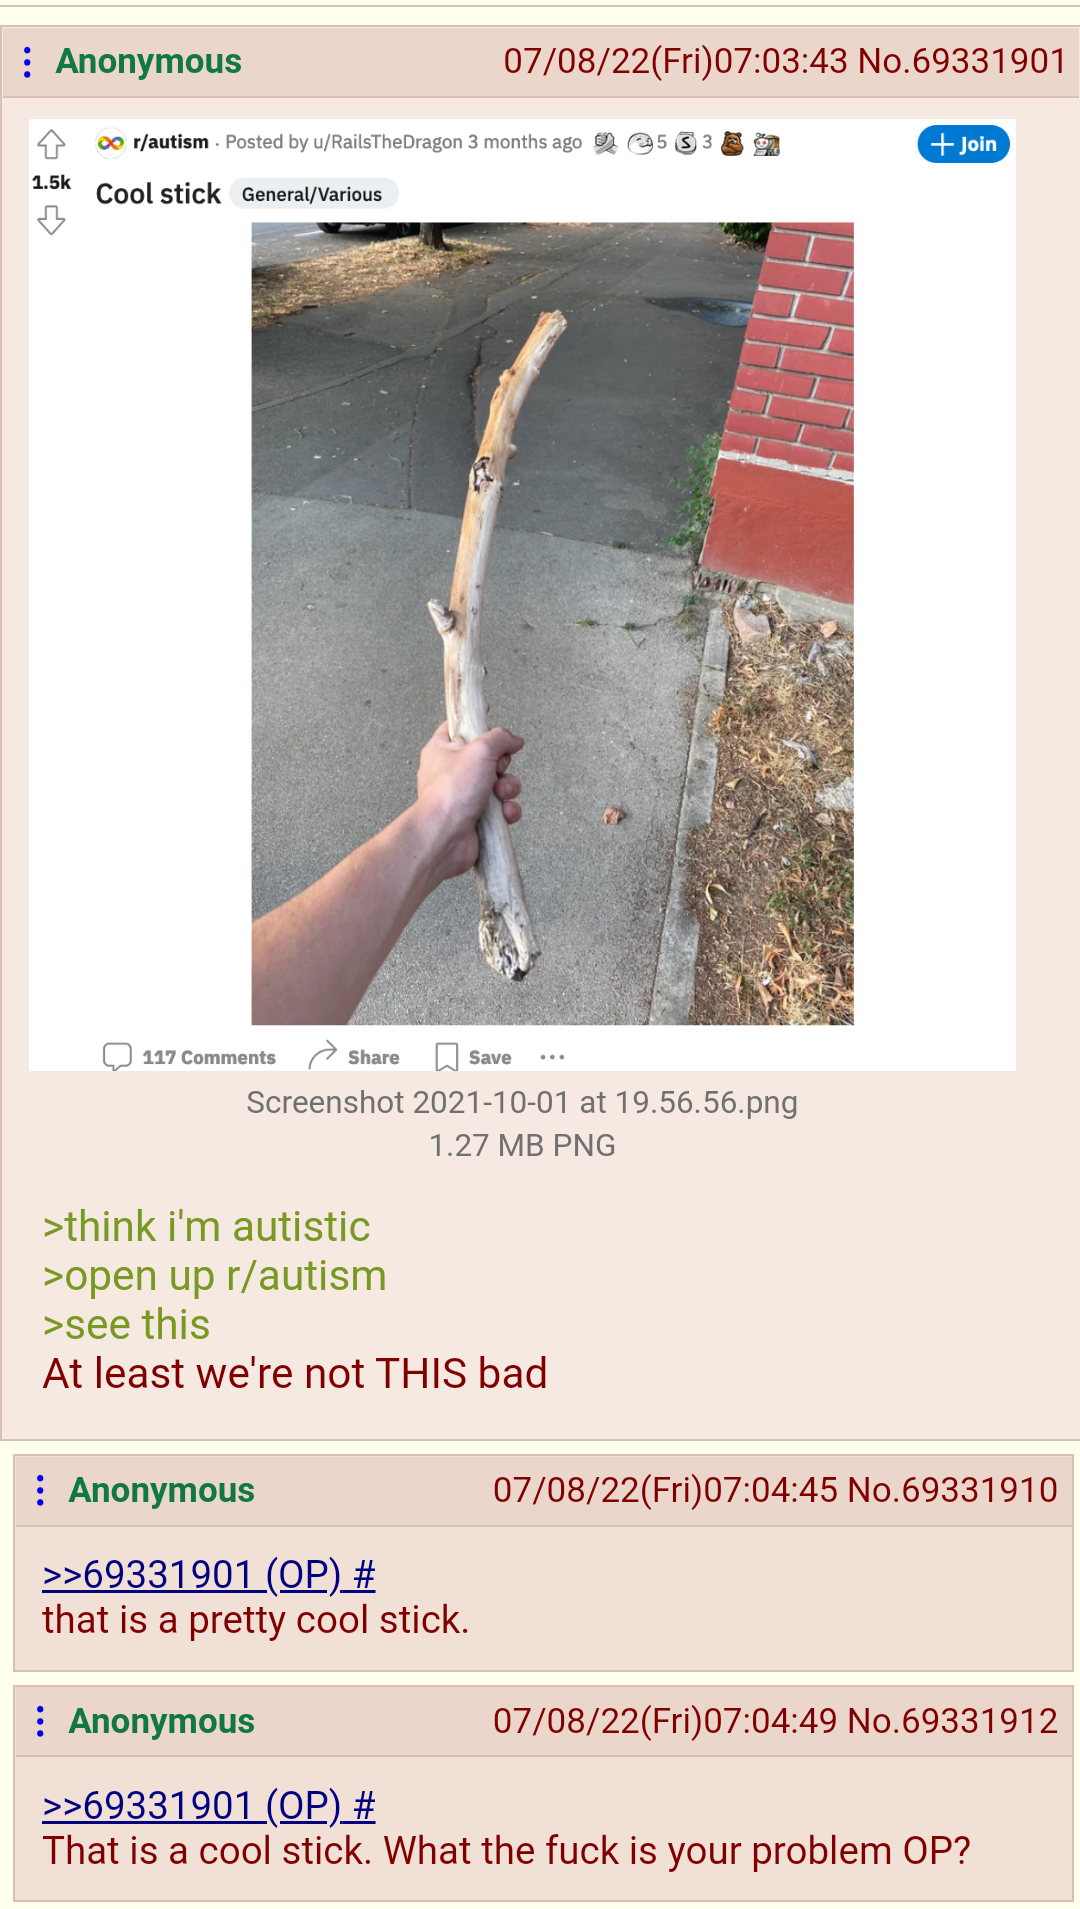 anon doesn't appreciate cool sticks